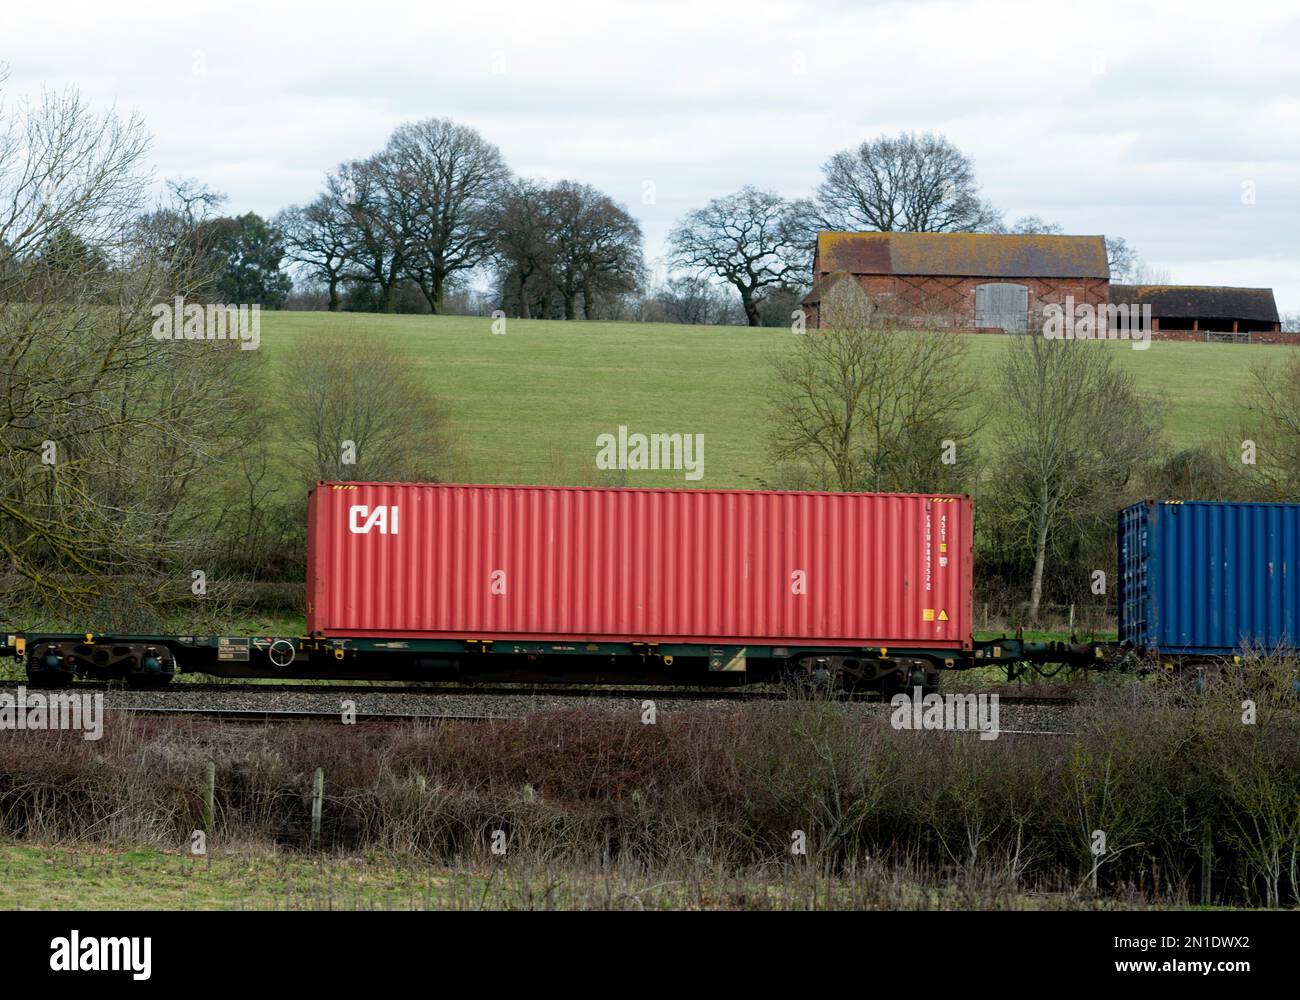 CAI, conteneur d'expédition sur un train intermodal, Warwickshire, Royaume-Uni Banque D'Images